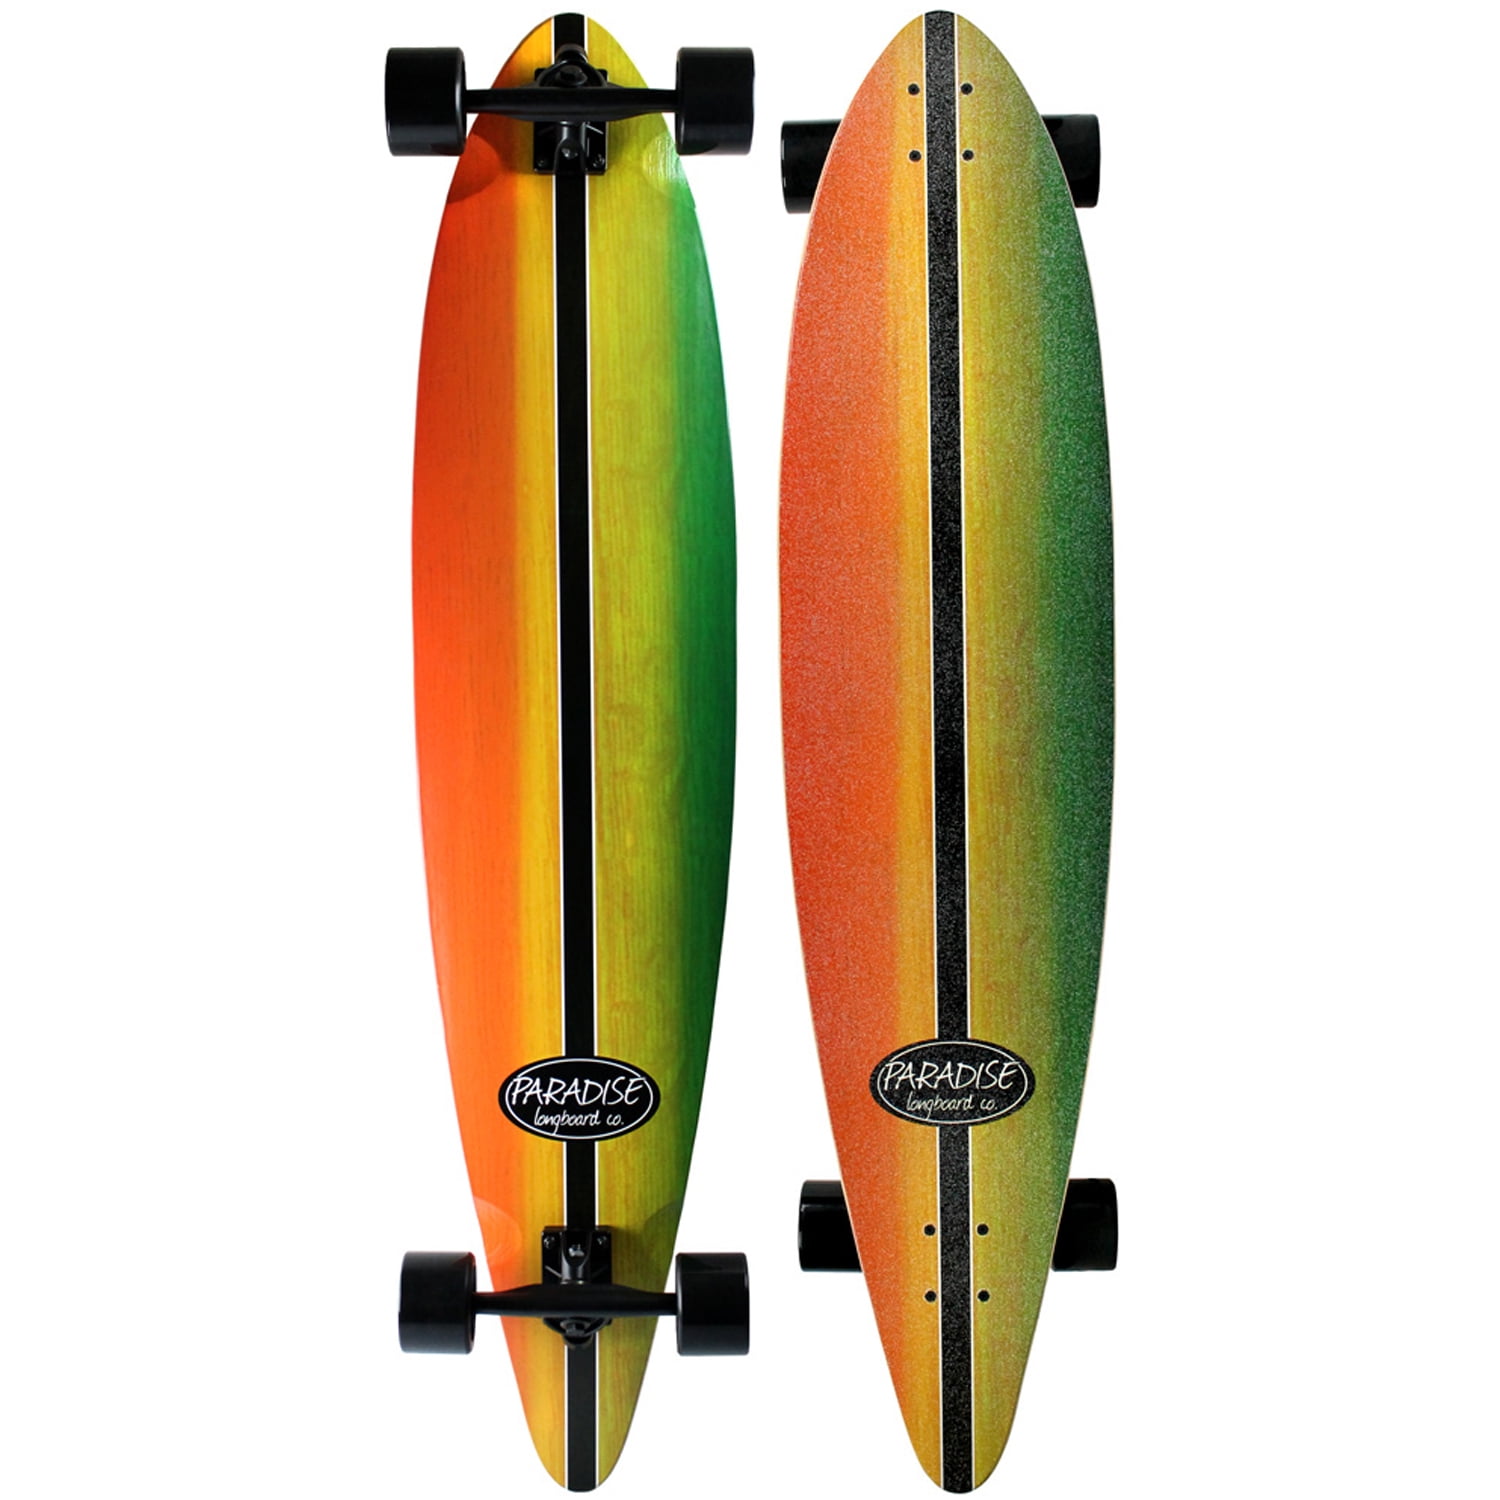 34" x 9" shape your own 10ply skateboard/longboard deck carve/surf board 